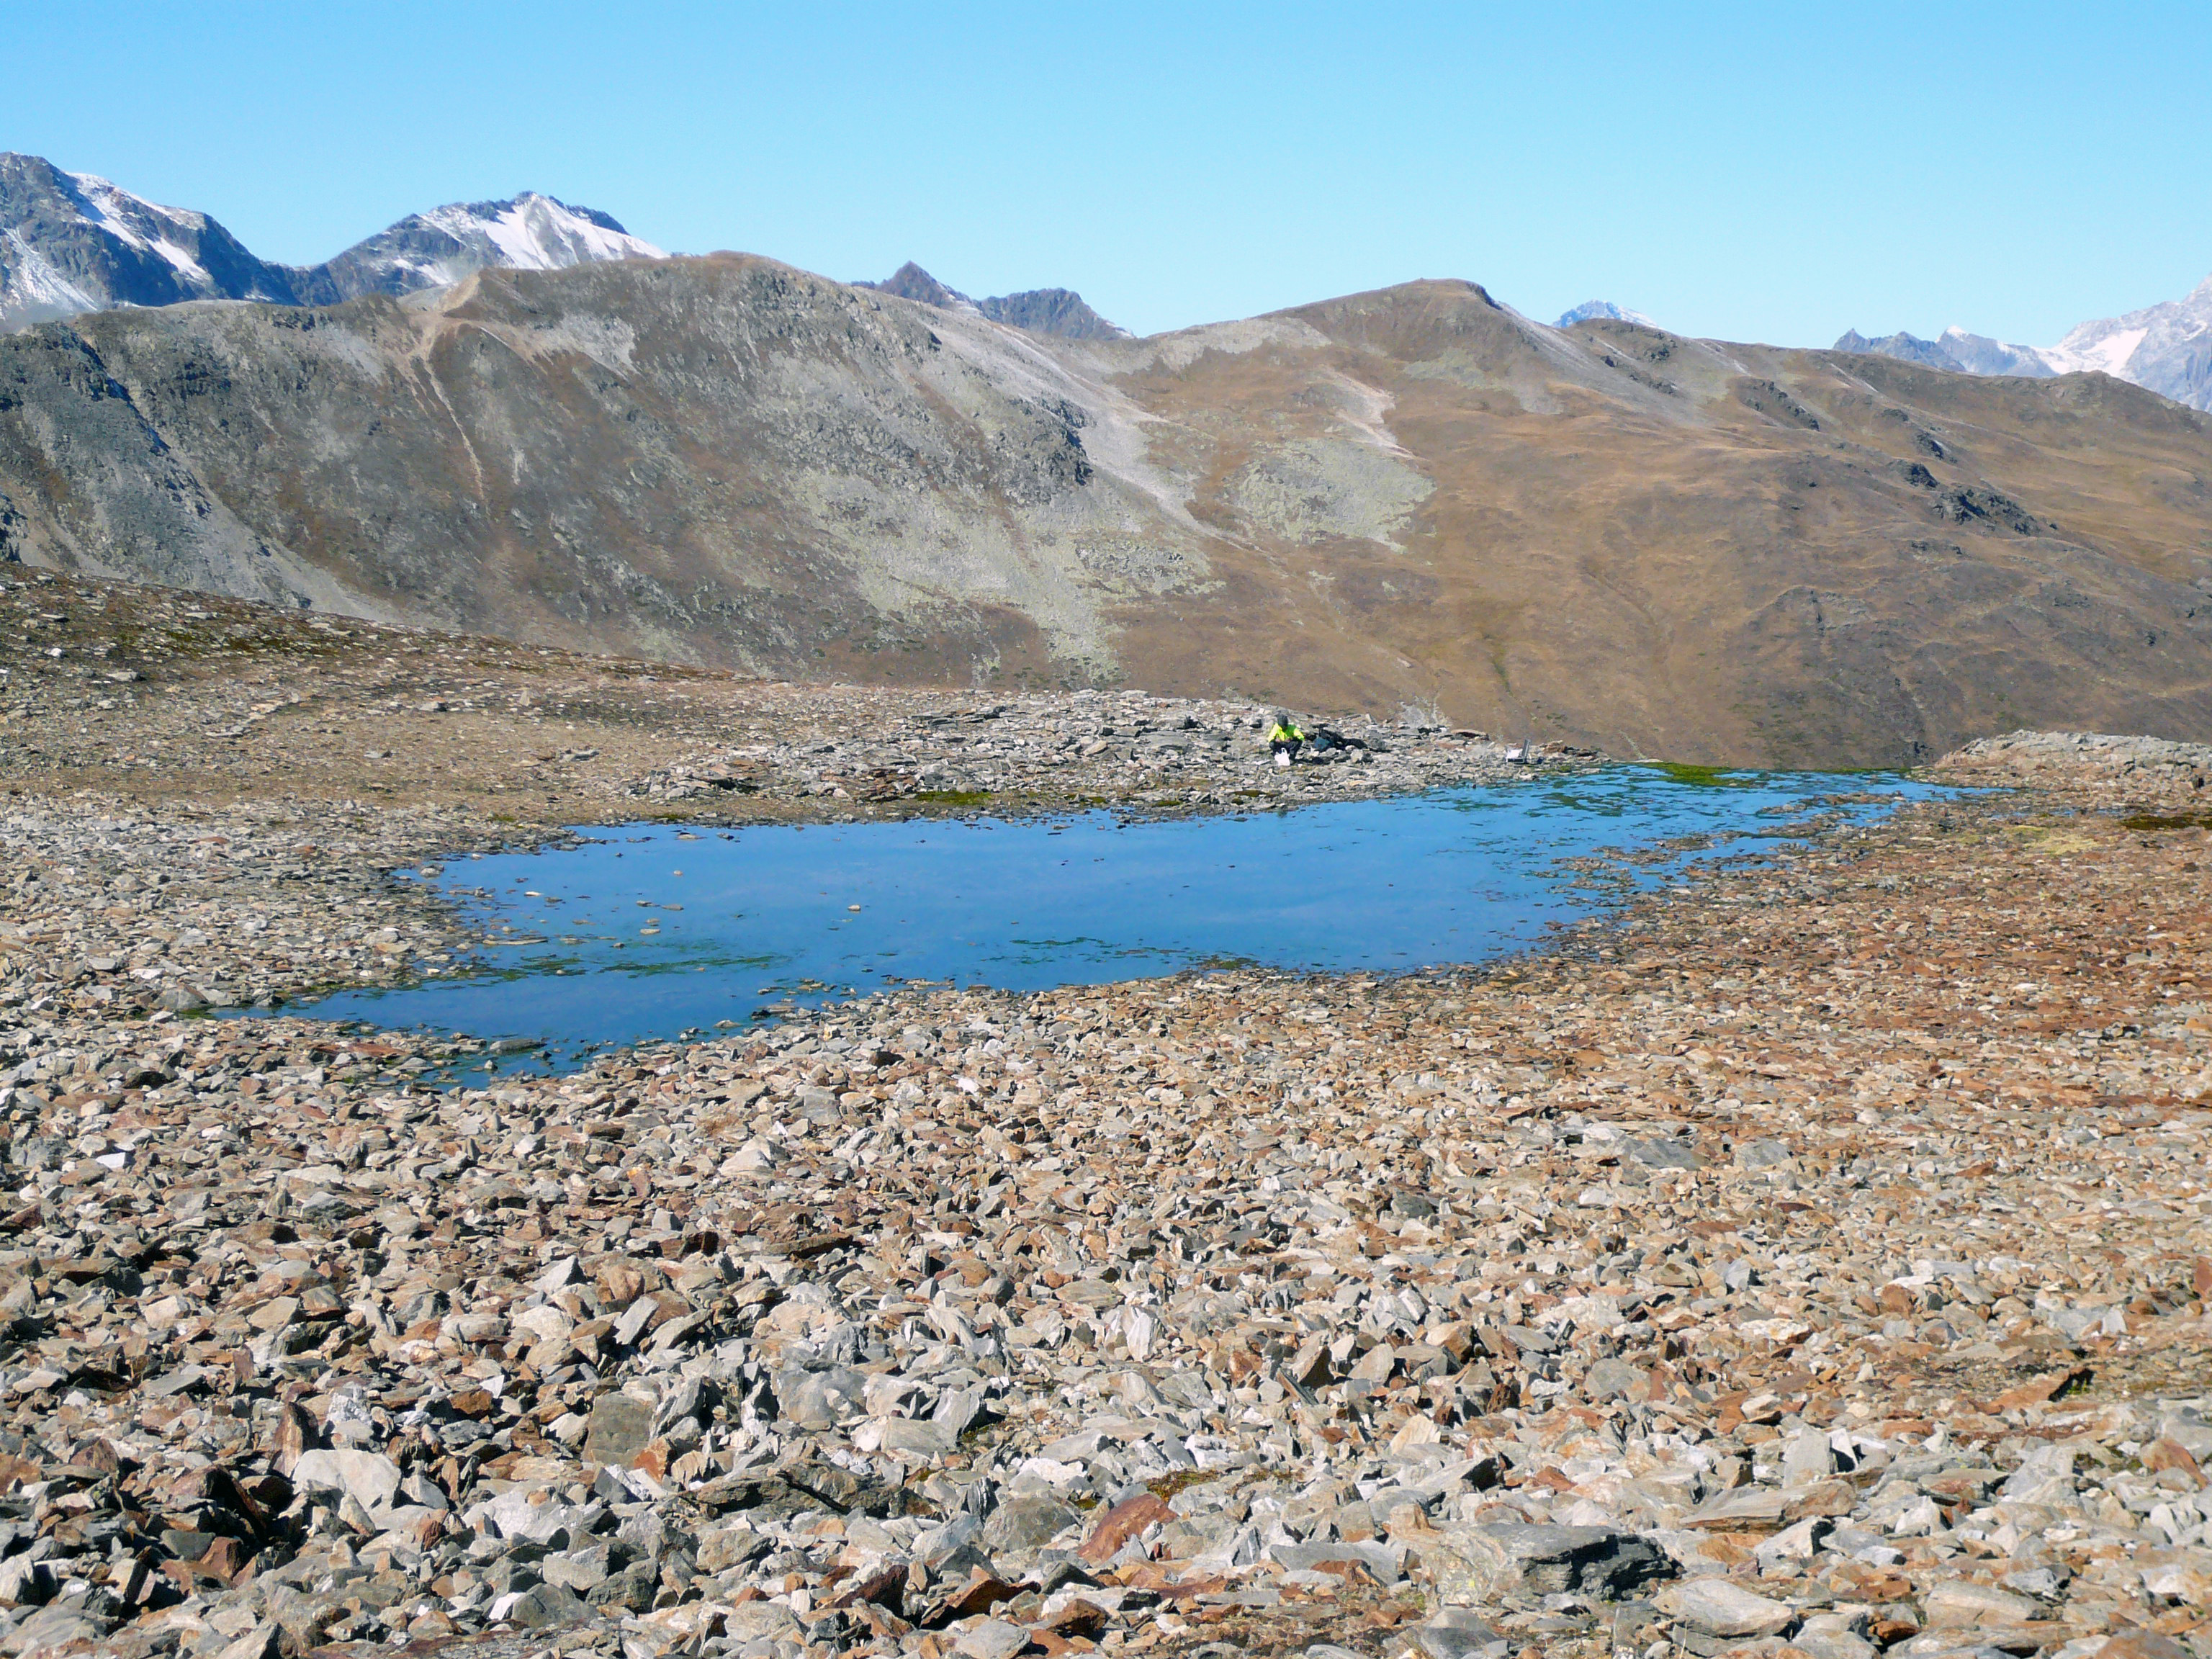 Die Quelle des Bachs liegt in einem Permafrostgebiet. © Christoph Wanner, Institut für Geologie, Universität Bern